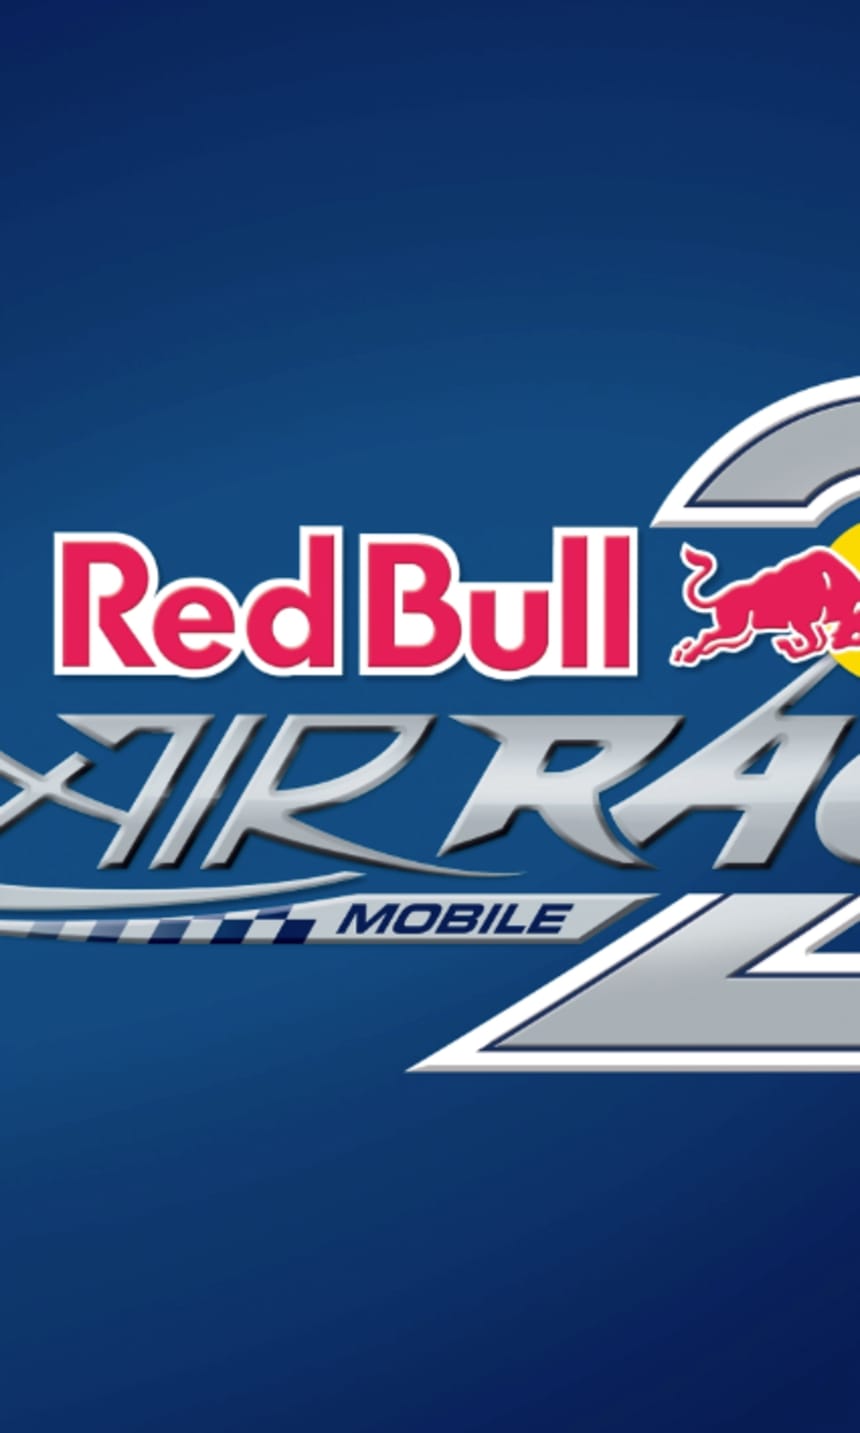 Baixe o novo Red Bull Air Race 2 para Android e iOS